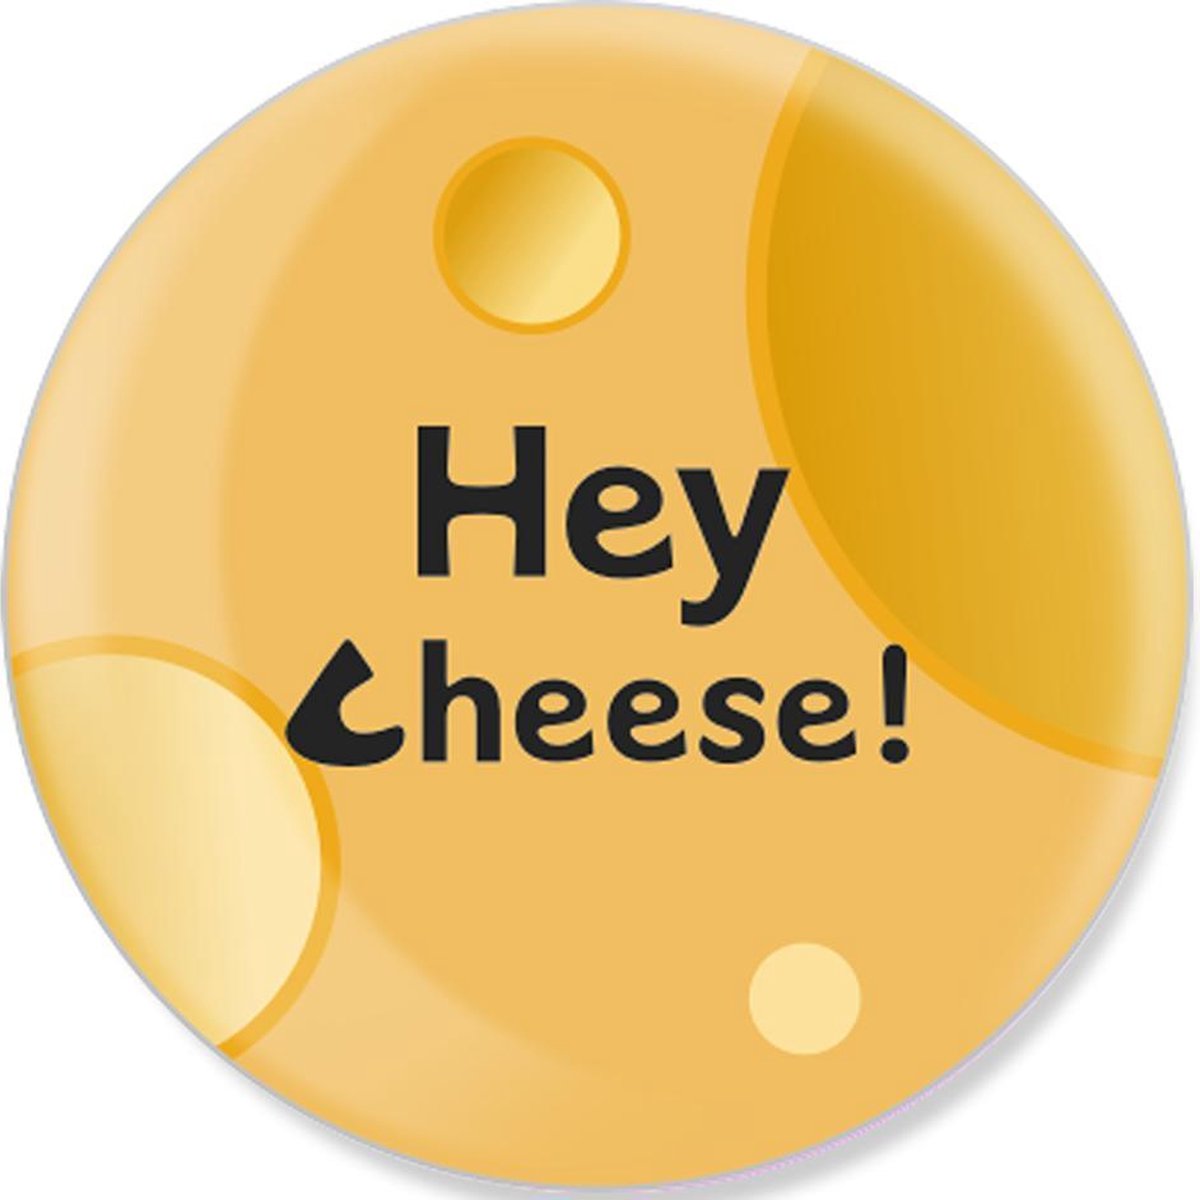 HeyCheese -  Cheese - Jouw Socials Delen Met 1 Tap - NFC Tags - Digitaal Visitekaartje - Gadgets - Social Media Marketing - Hoesje - Nummer of Website - Contactloos - Snel - HeyCheese